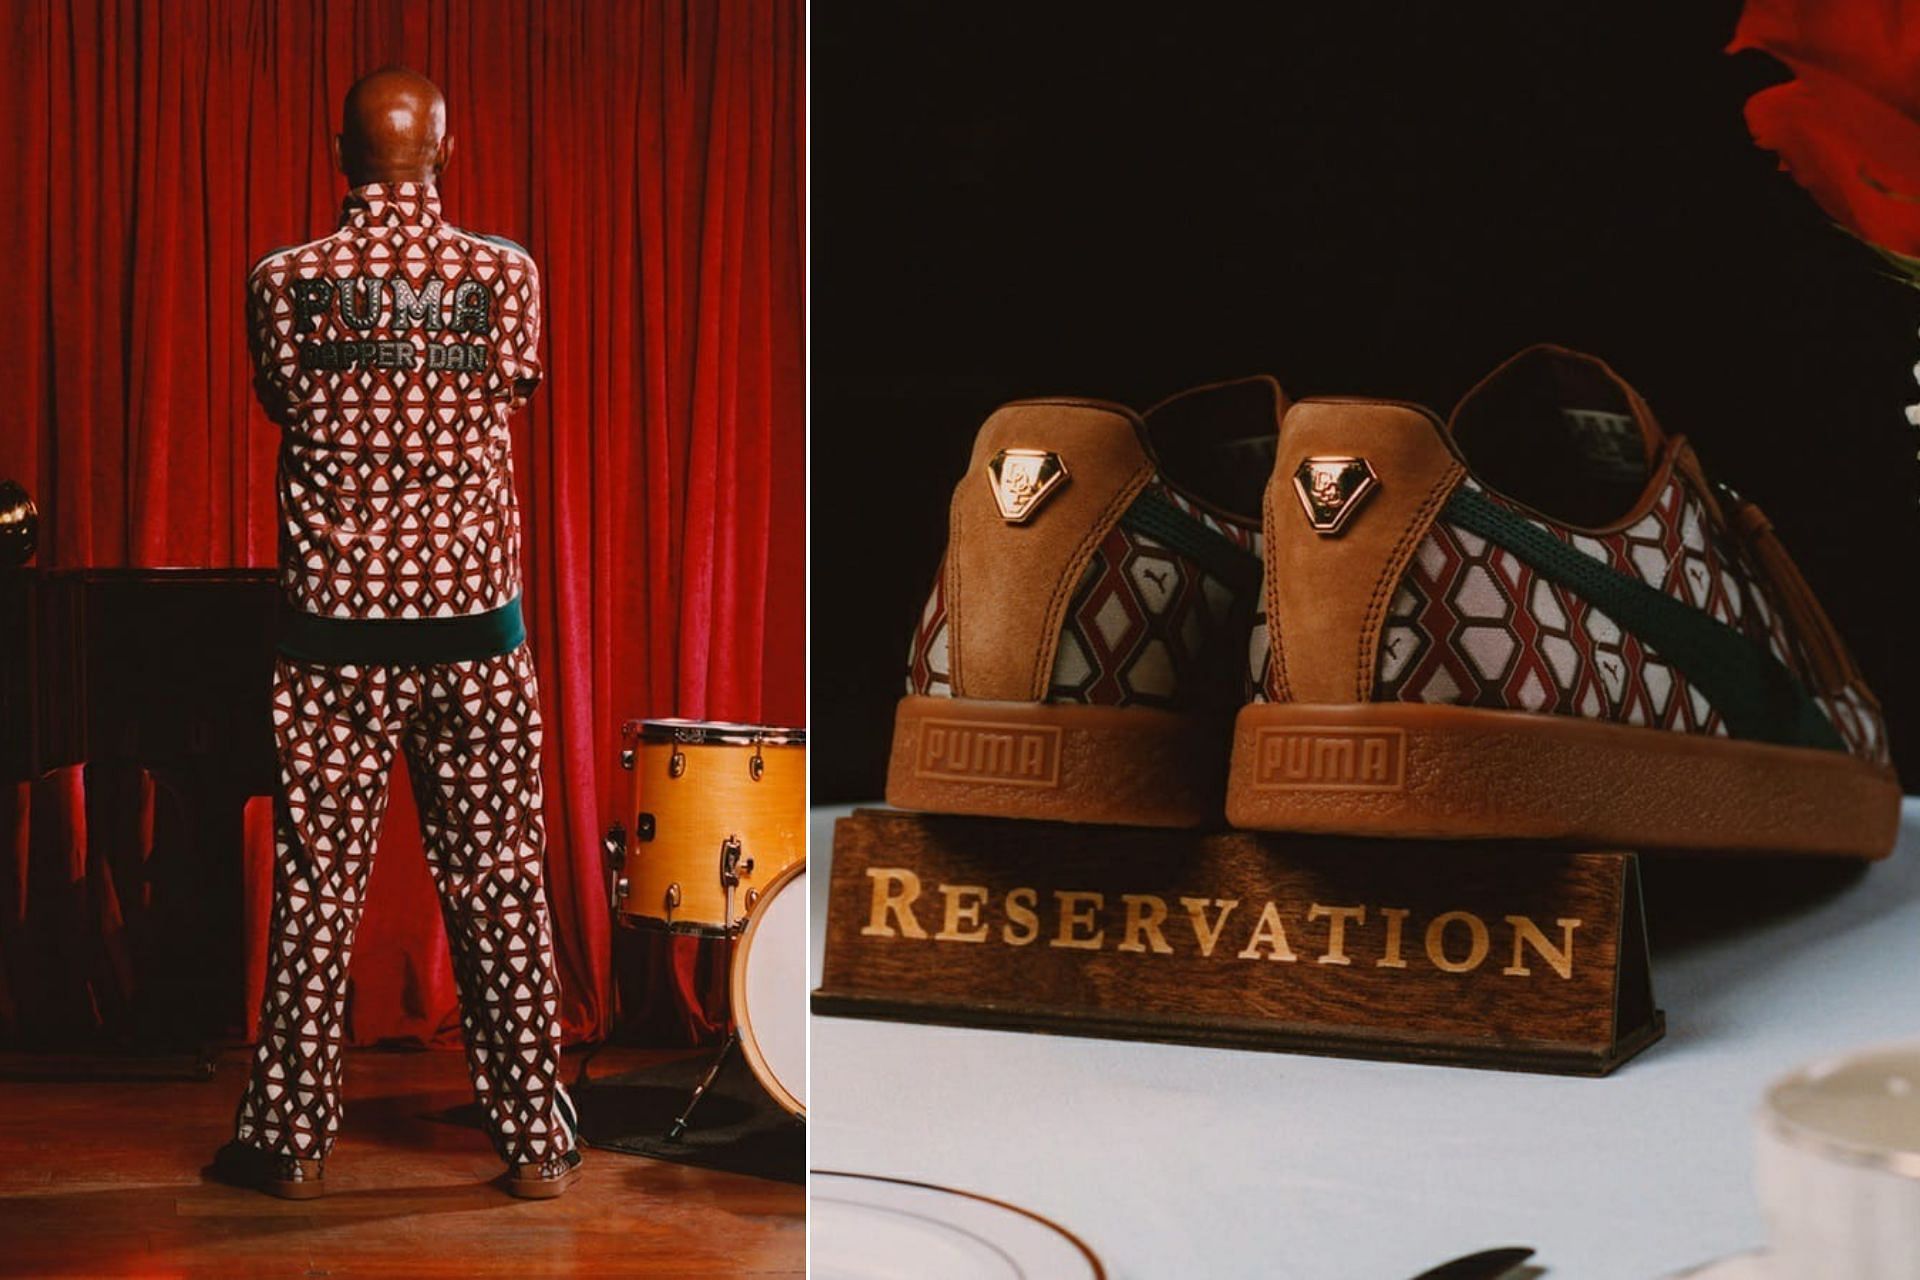 Harlem Glam Meets Sportswear in PUMA x Dapper Dan's Latest Collaboration